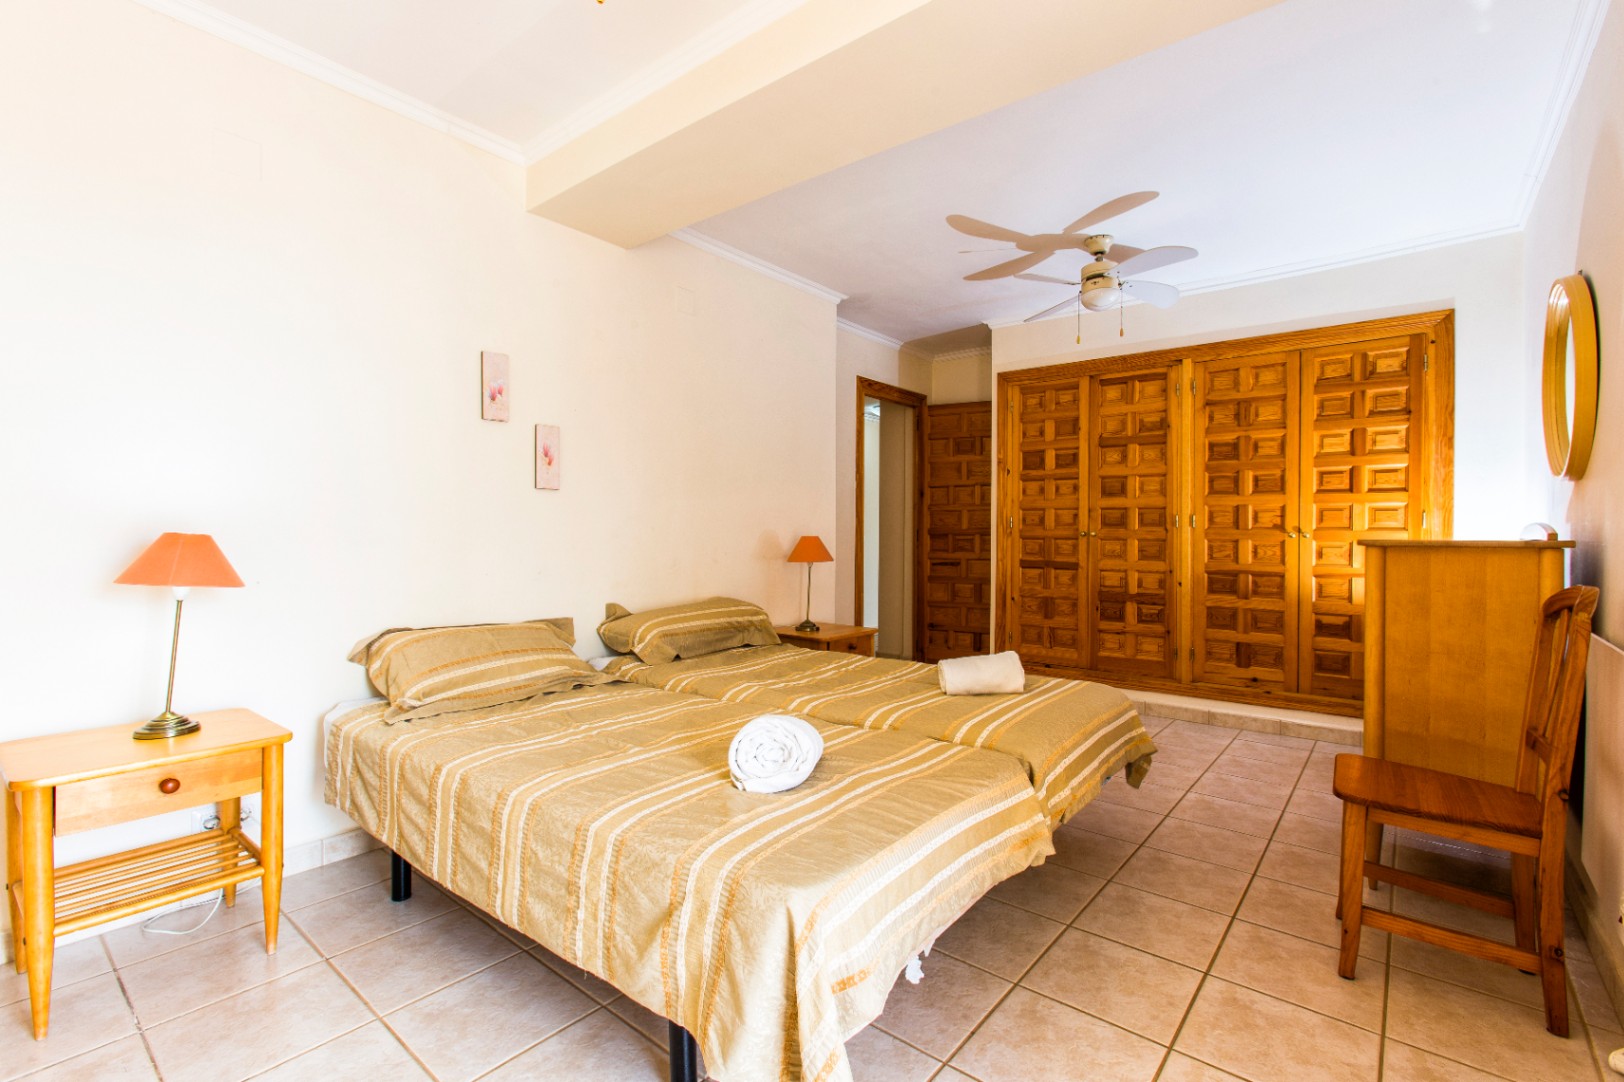 Villa met zeezicht bestaande uit 3 appartementen te koop in Benissa